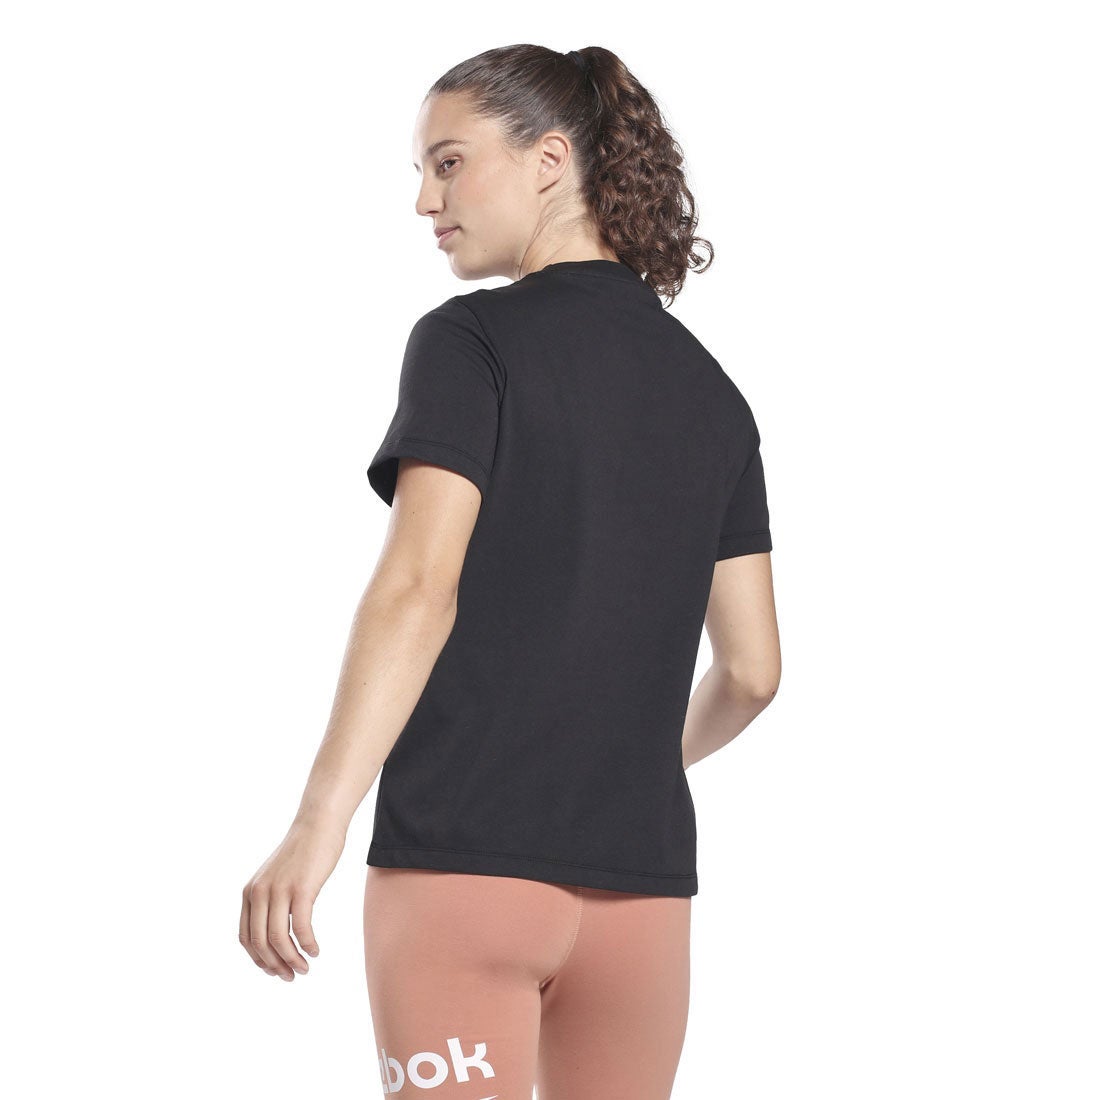 アイデンティティ Tシャツ / Identity T-Shirt （black） -Reebok 公式